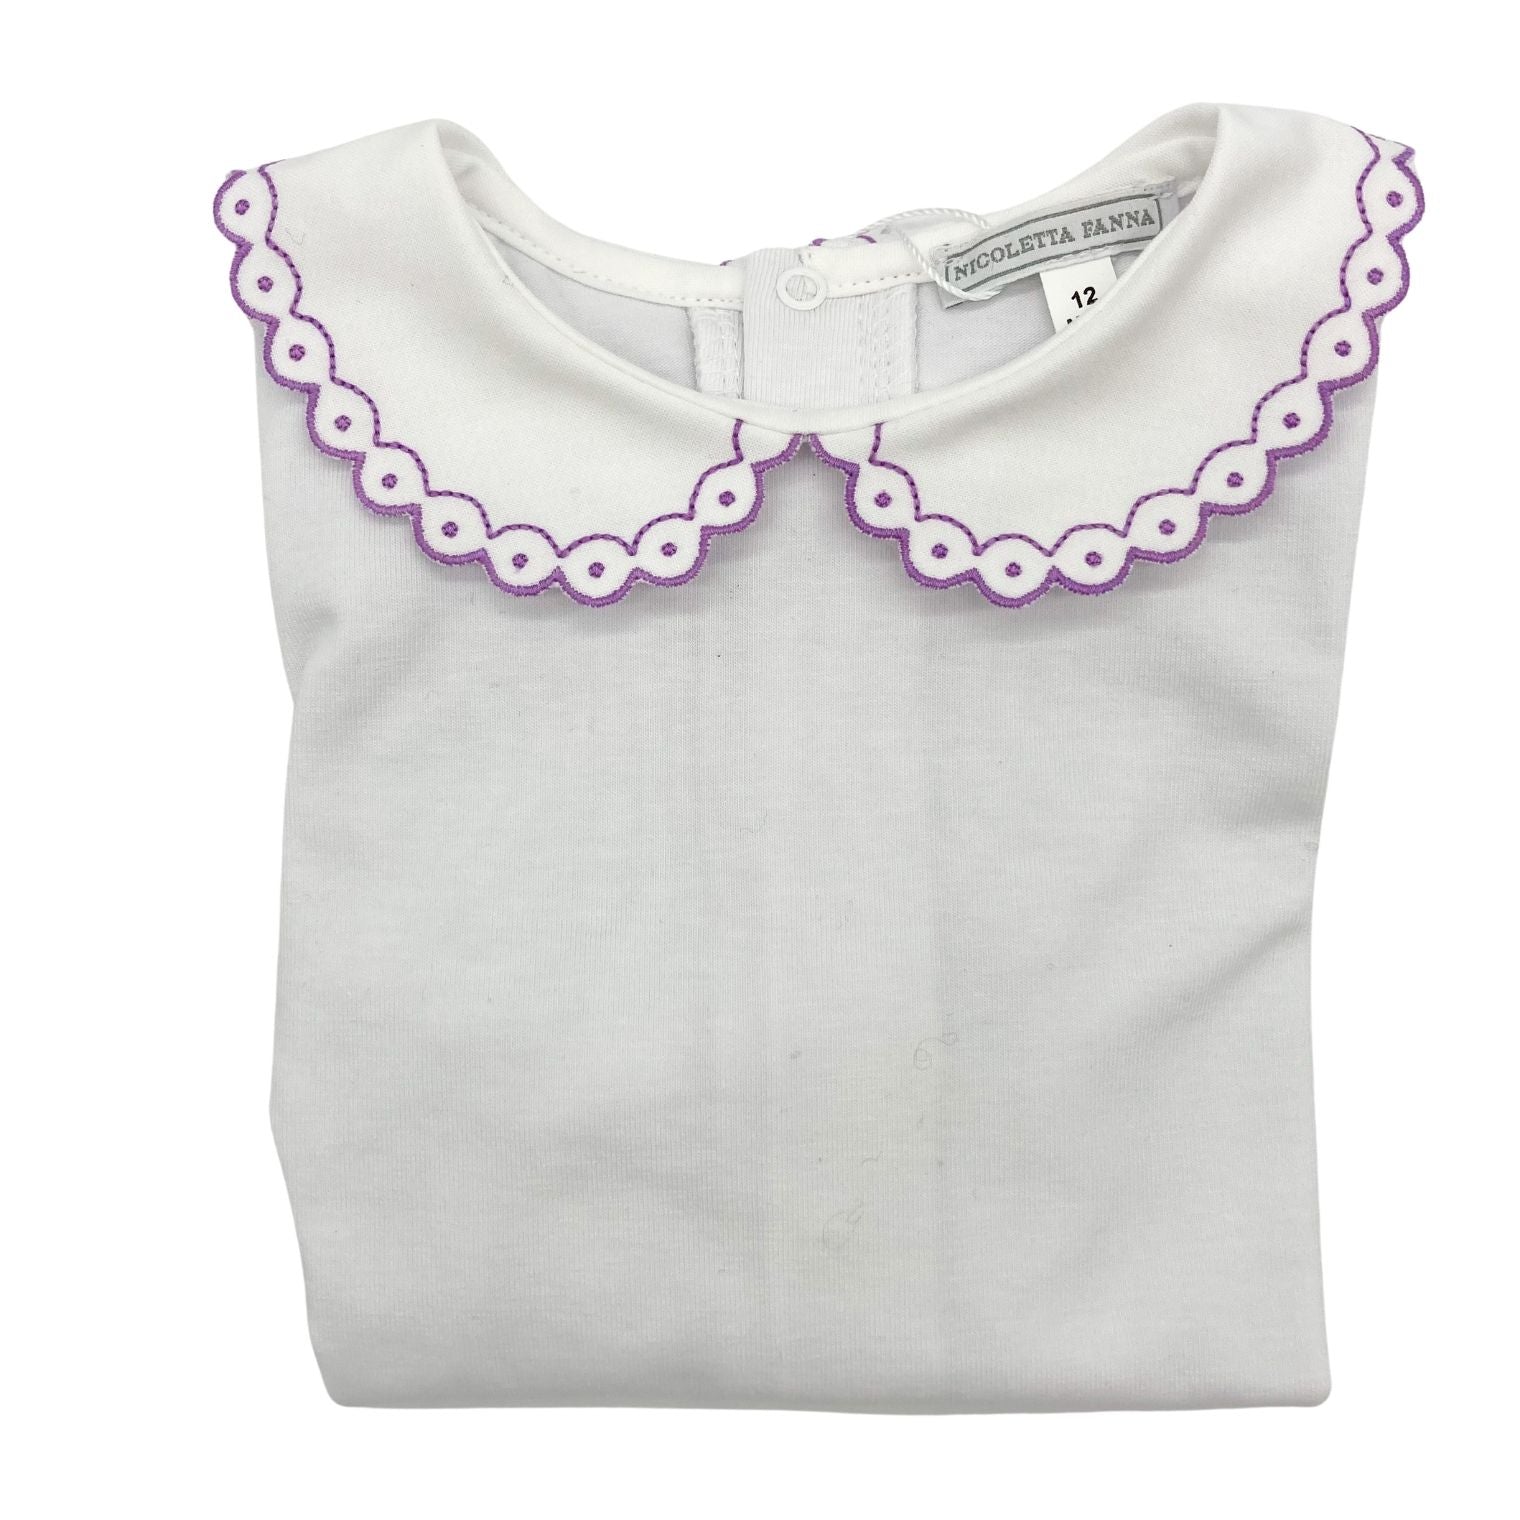 White Cotton Body with Embroidered Collar - Lavender - Nicoletta Fanna